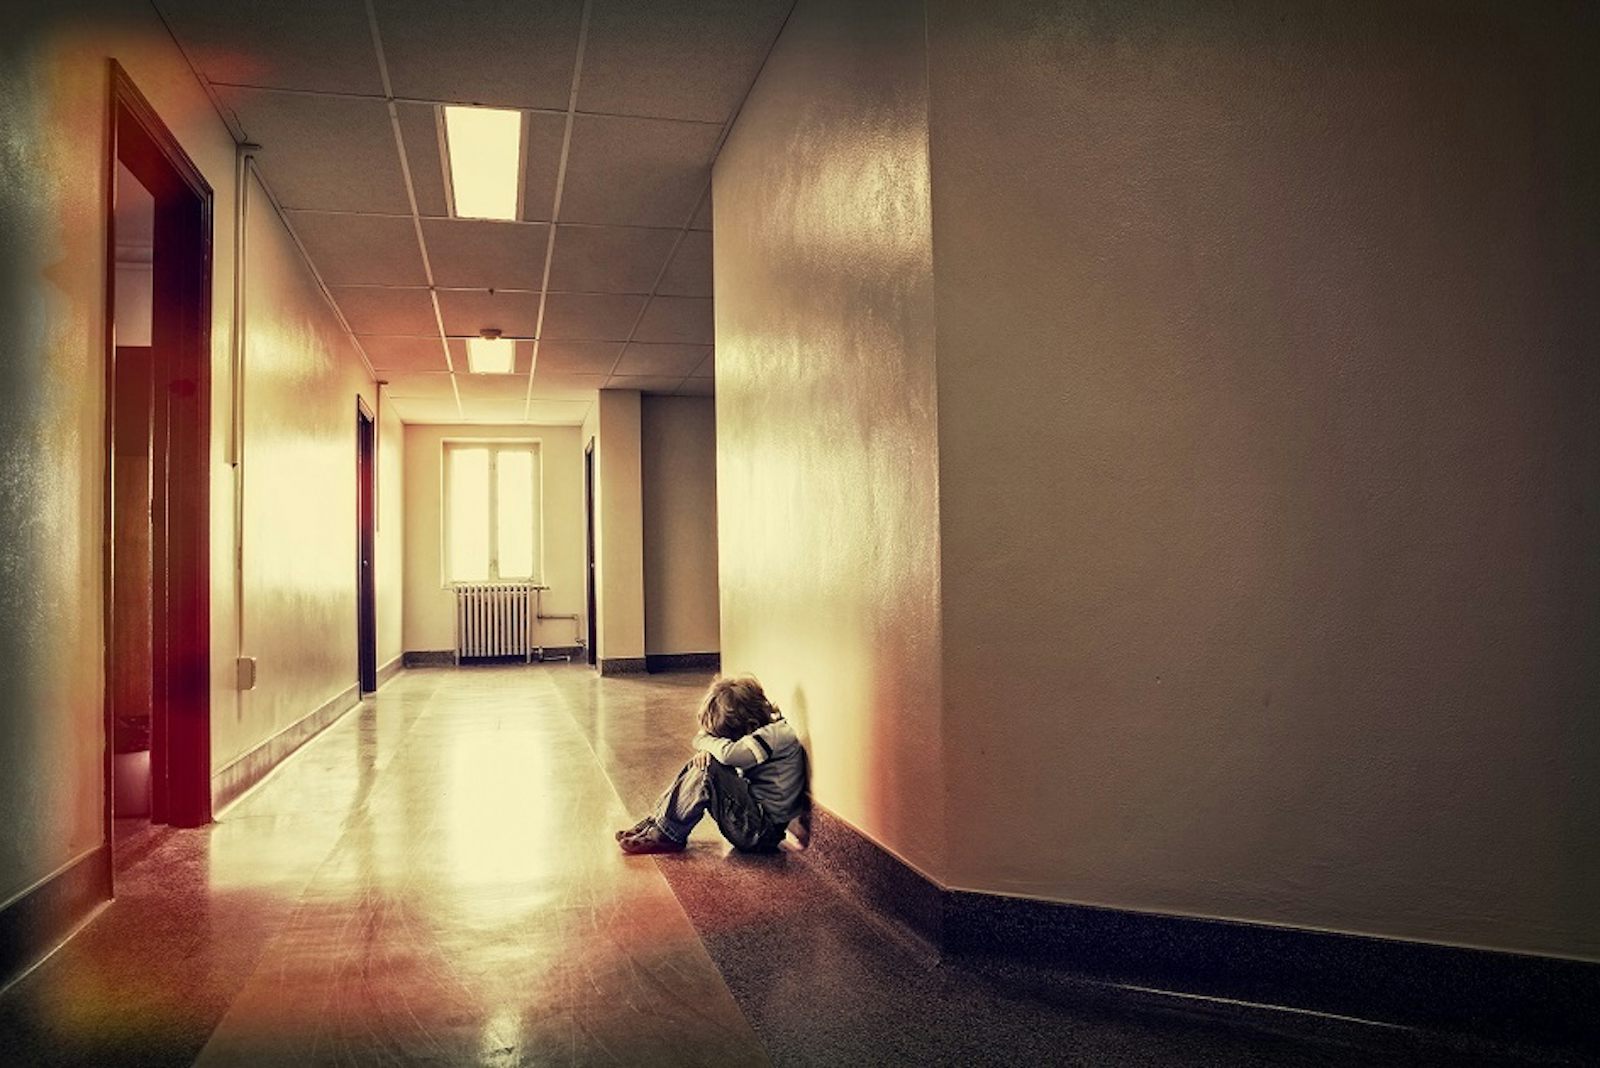 Child in hallway